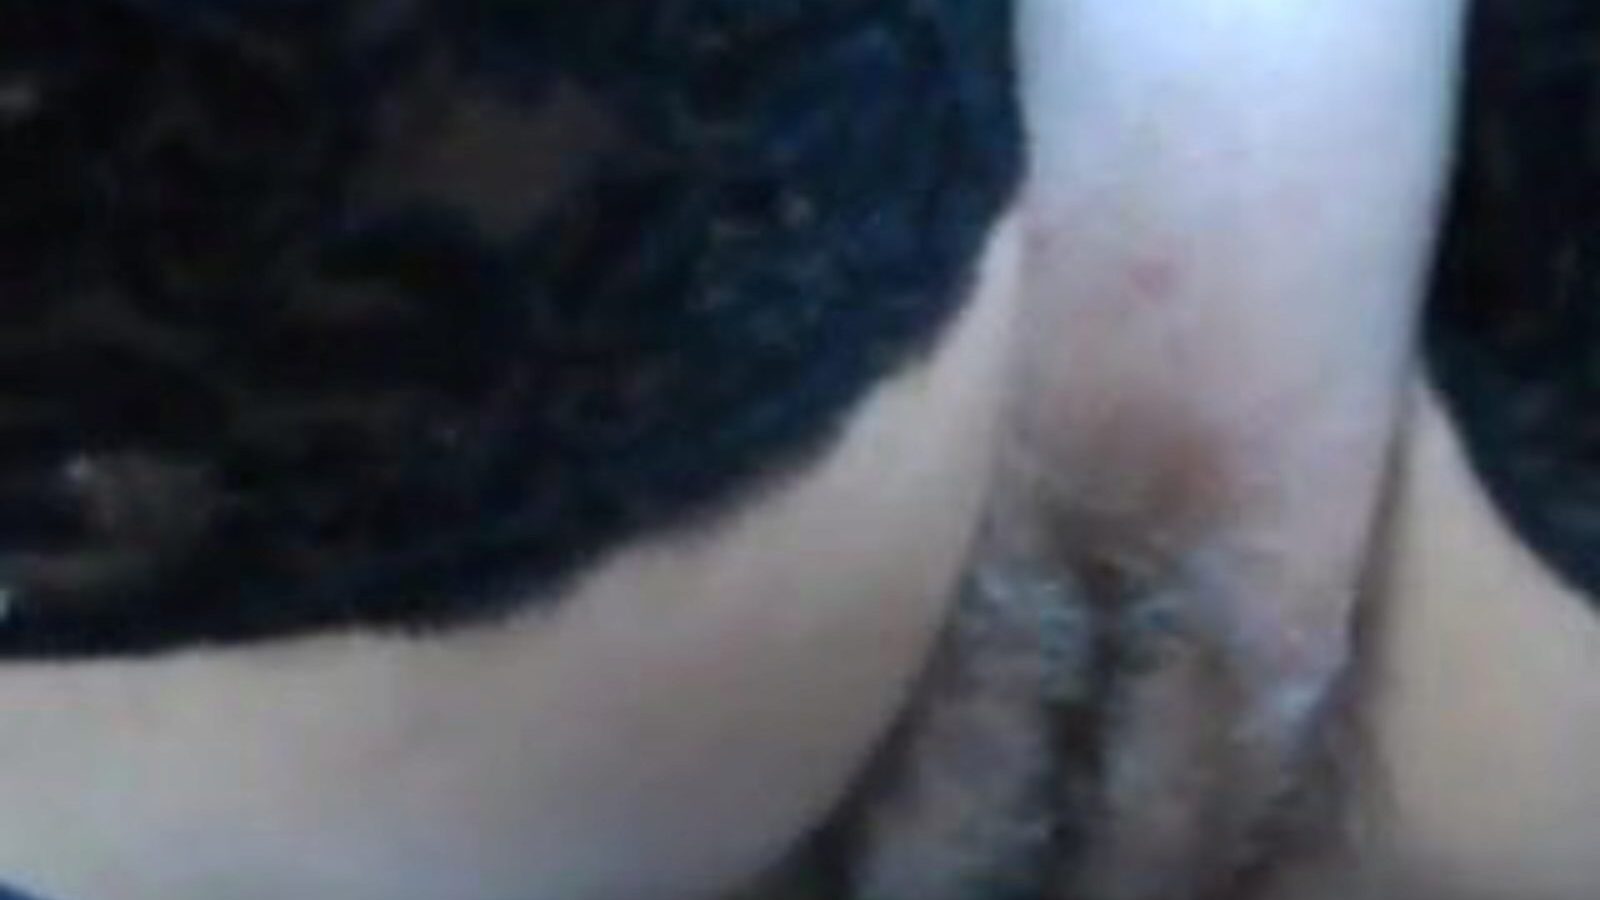 fasz és show: szőrös pina fasz pornó videó b9 - xhamster nézd meg a fasz és a show tube szerelmi videót ingyen mindenki számára a xhamsteren, a szőrös pina fasz ingyenes és a xxx és fasz show pornó epizódsorozatok hiteles gyűjteményével